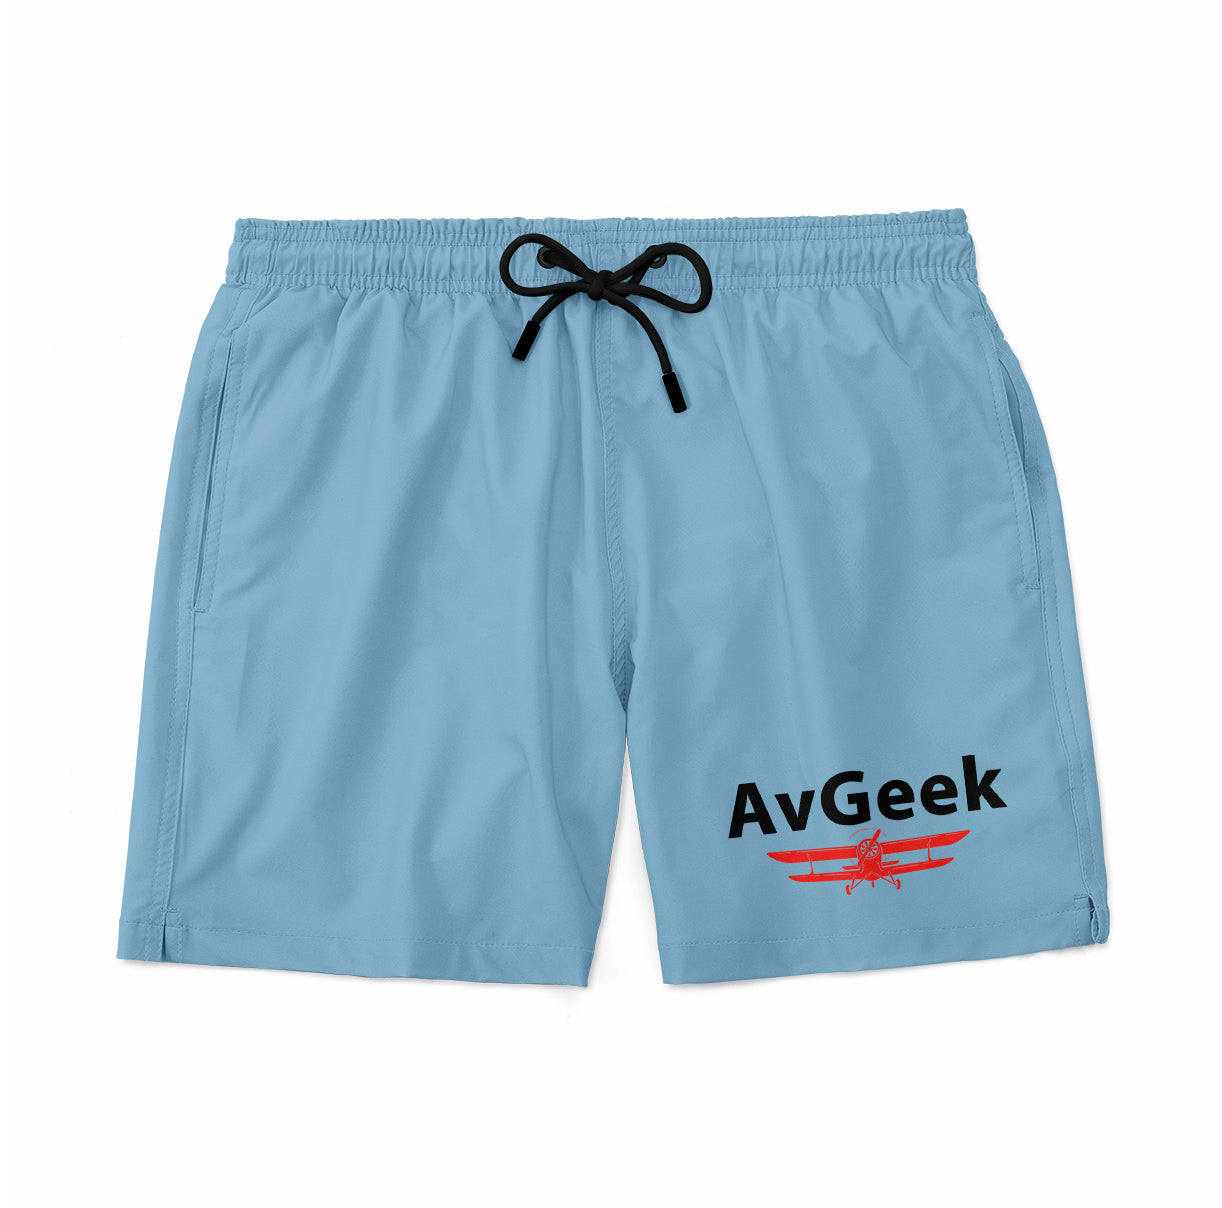 Avgeek Designed Swim Trunks & Shorts